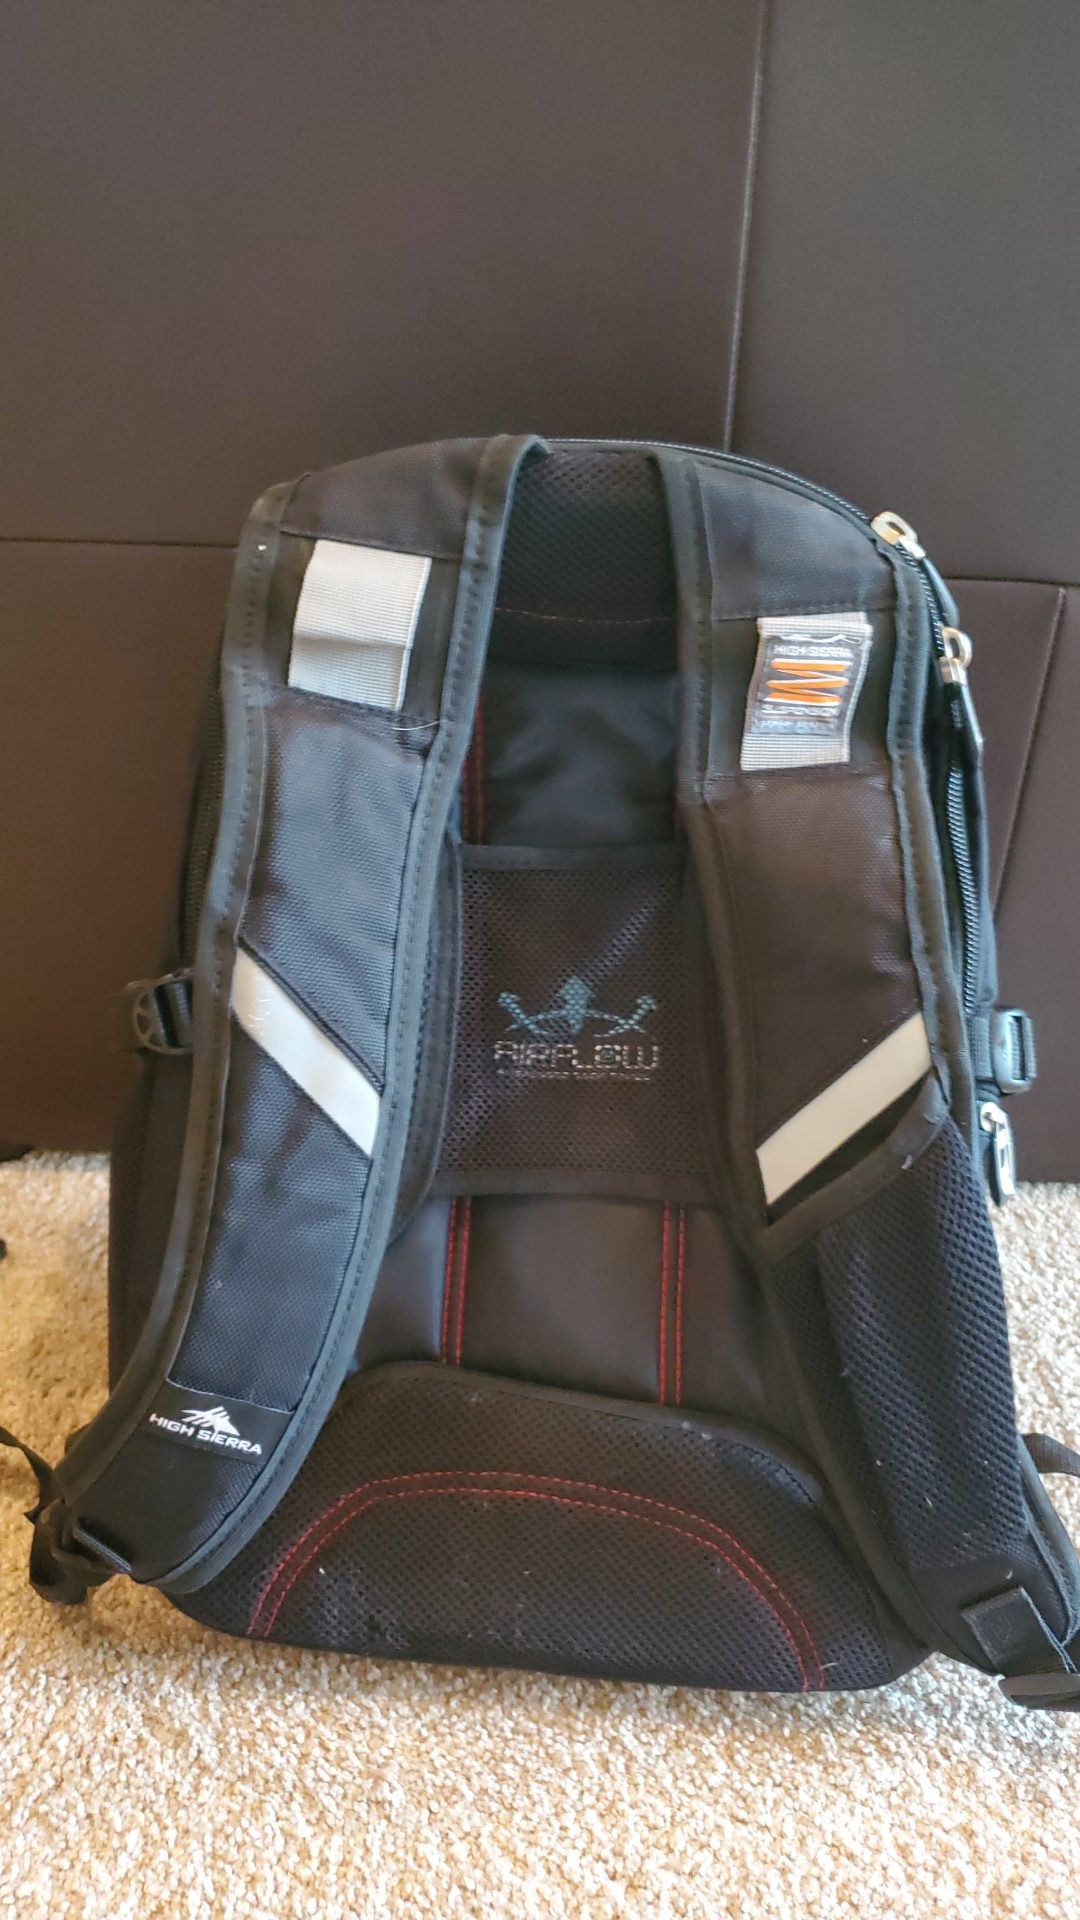 High Sierra Elite Suspension strap system backpack